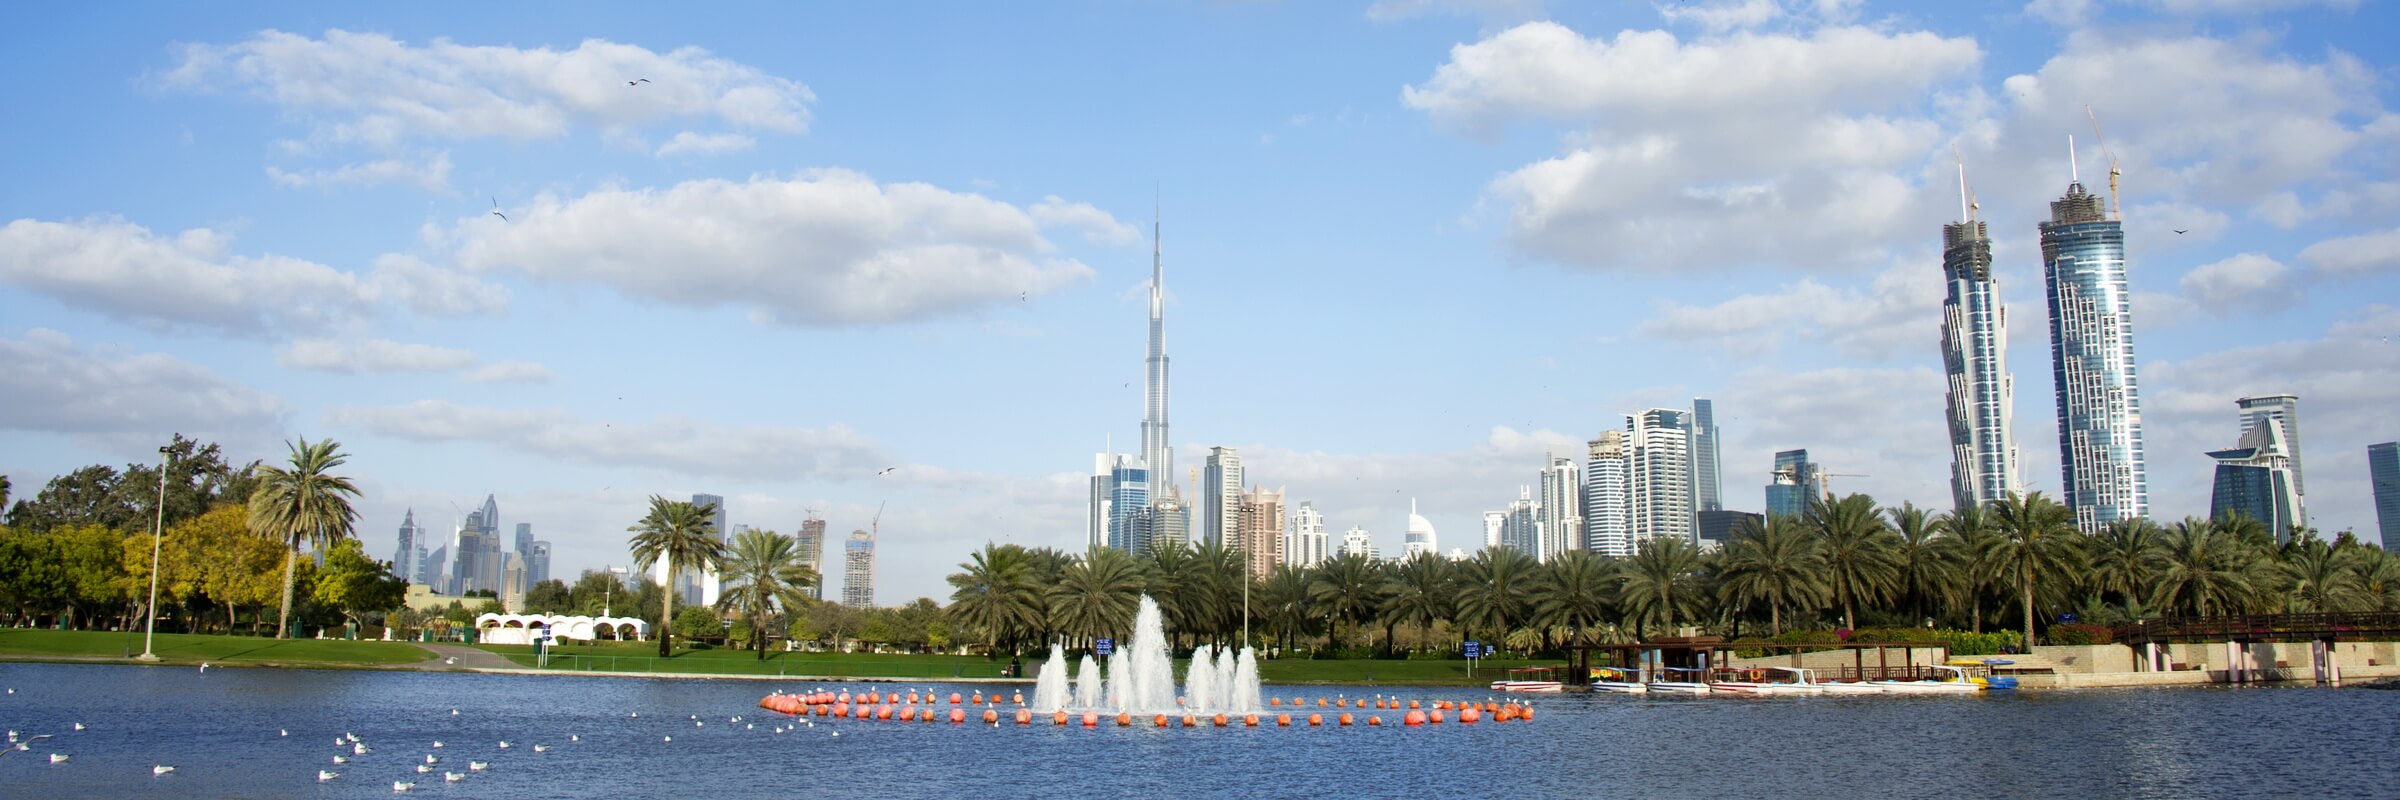 Auch aus der Ferne betrachtet dominiert das Burj Khalifa die Skyline von Dubai.